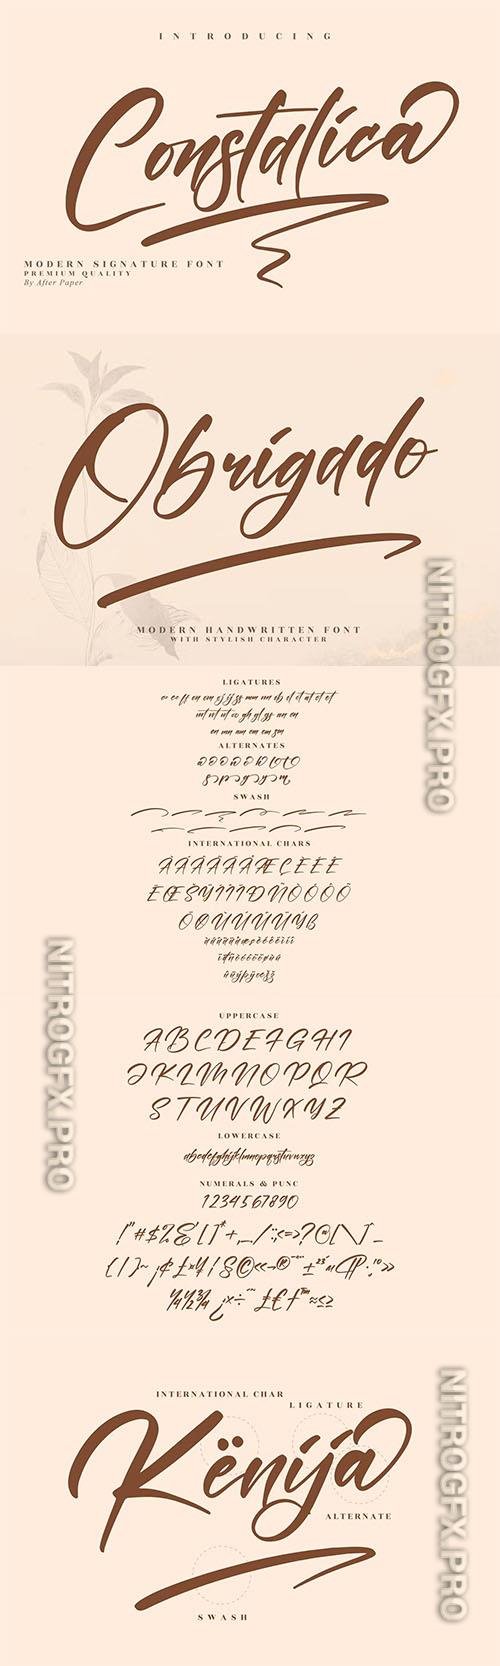 Constalica Modern Signature Font LS